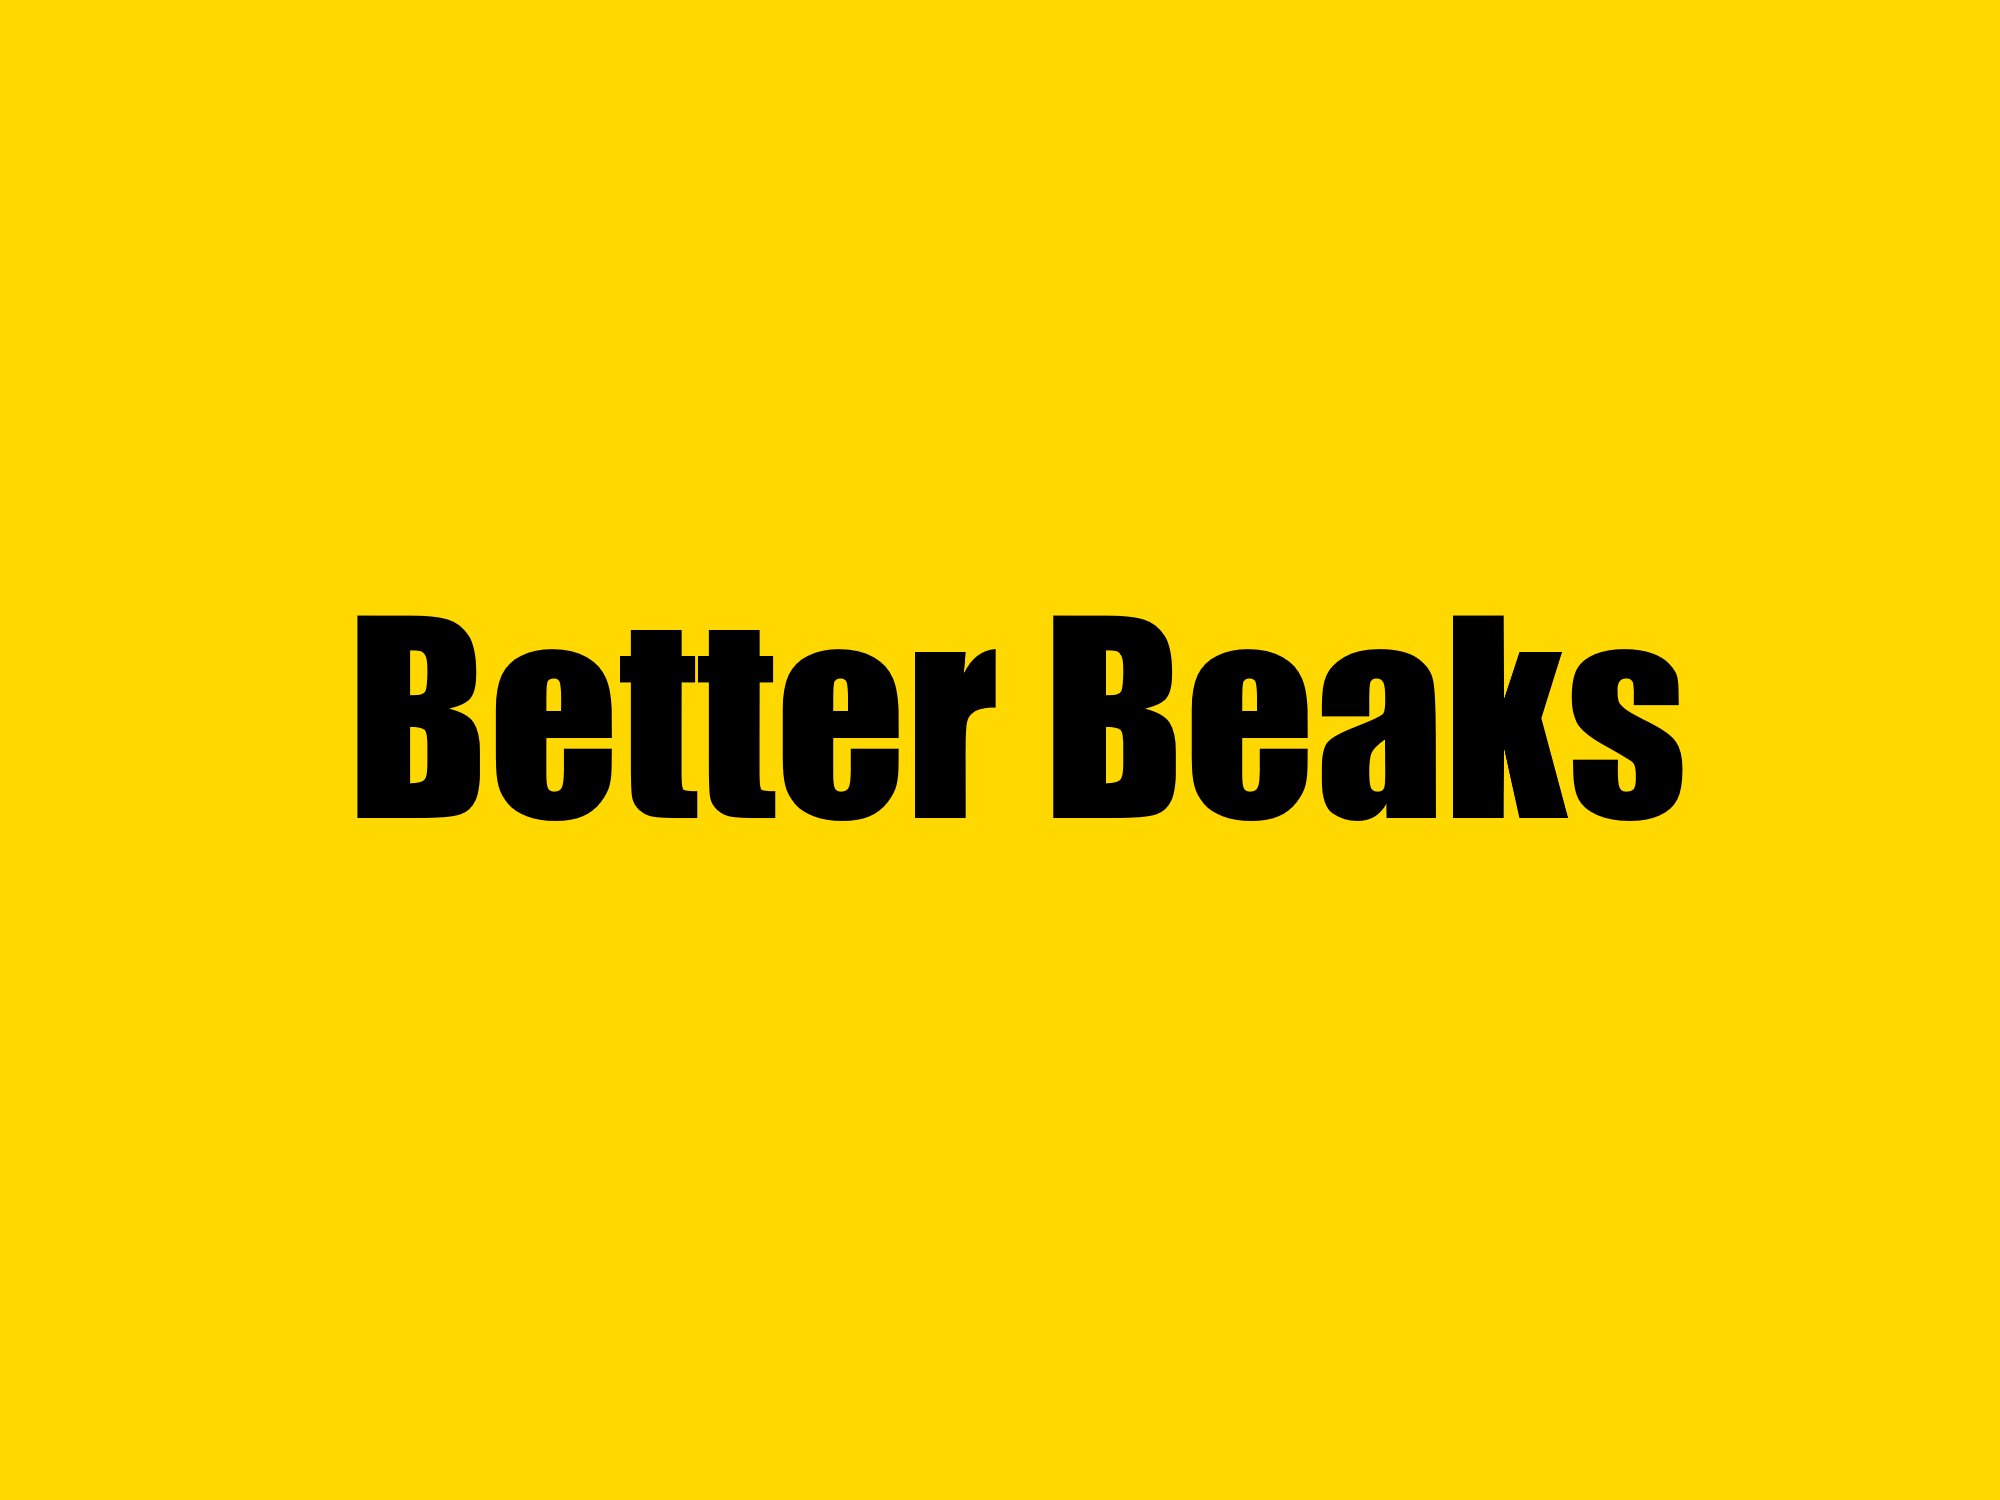 Better Beaks